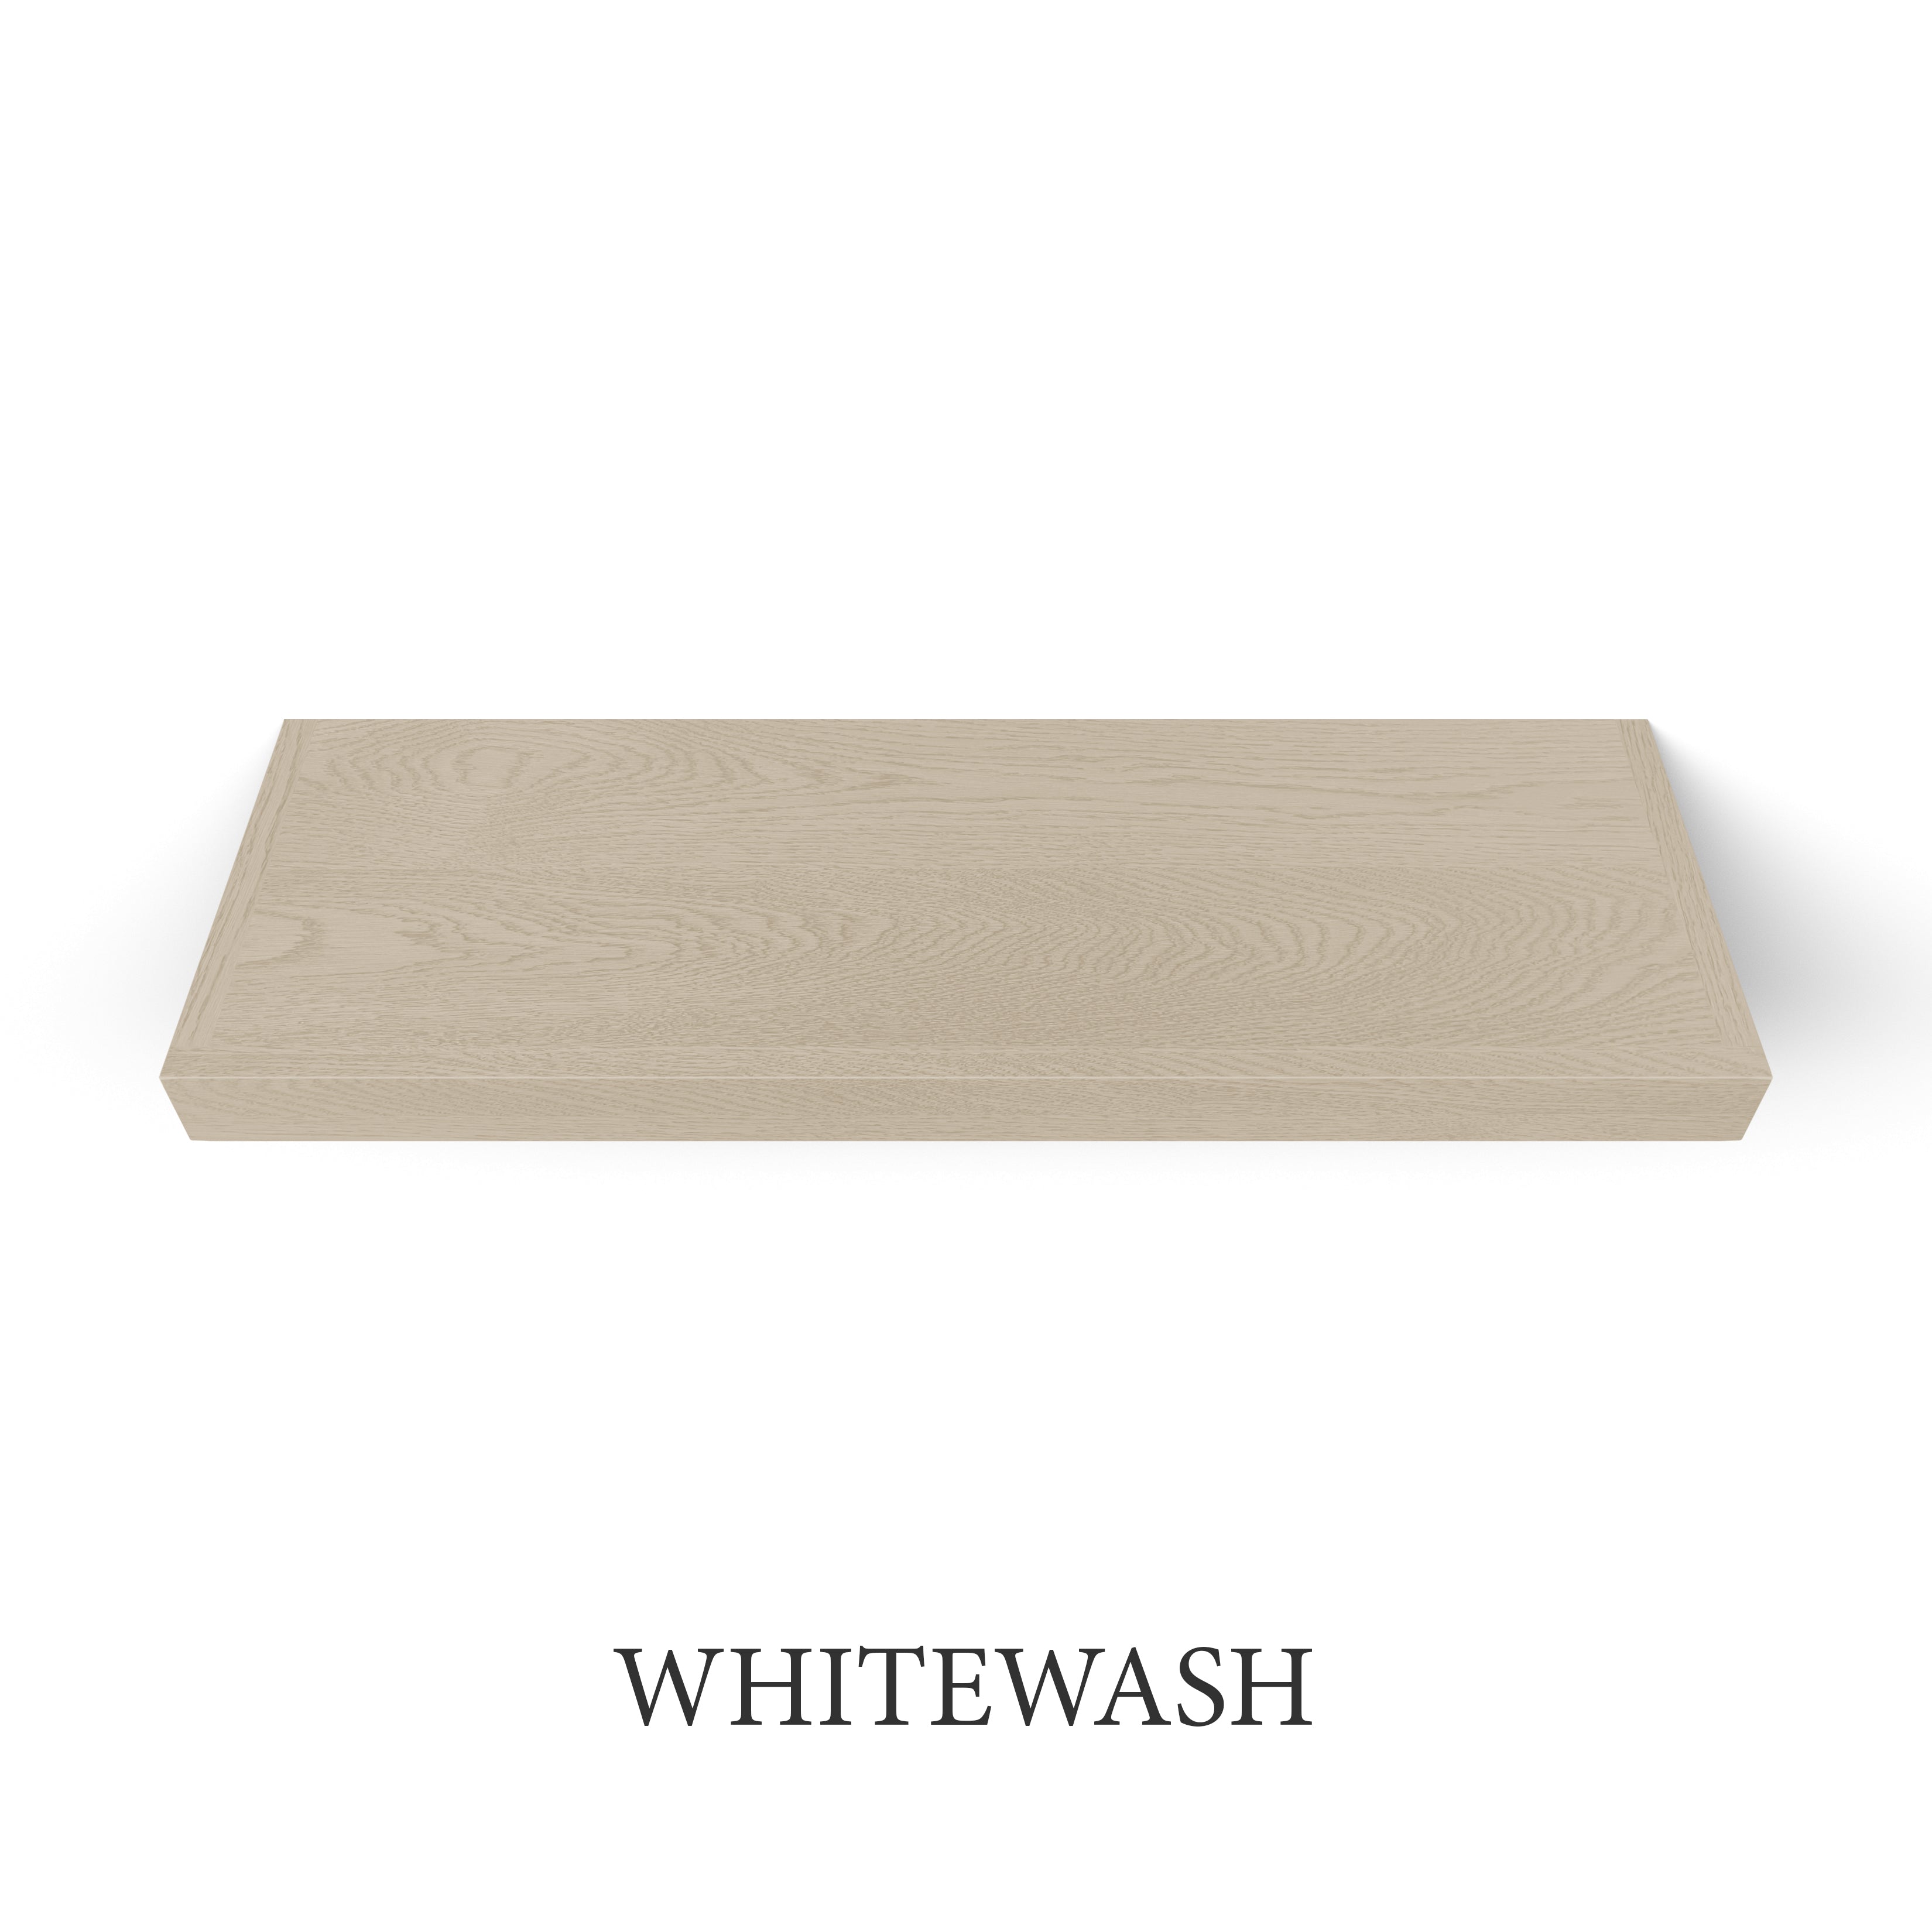 whitewash White Oak 2 Inch Thick LED Lighted Floating Shelf - Hardwired